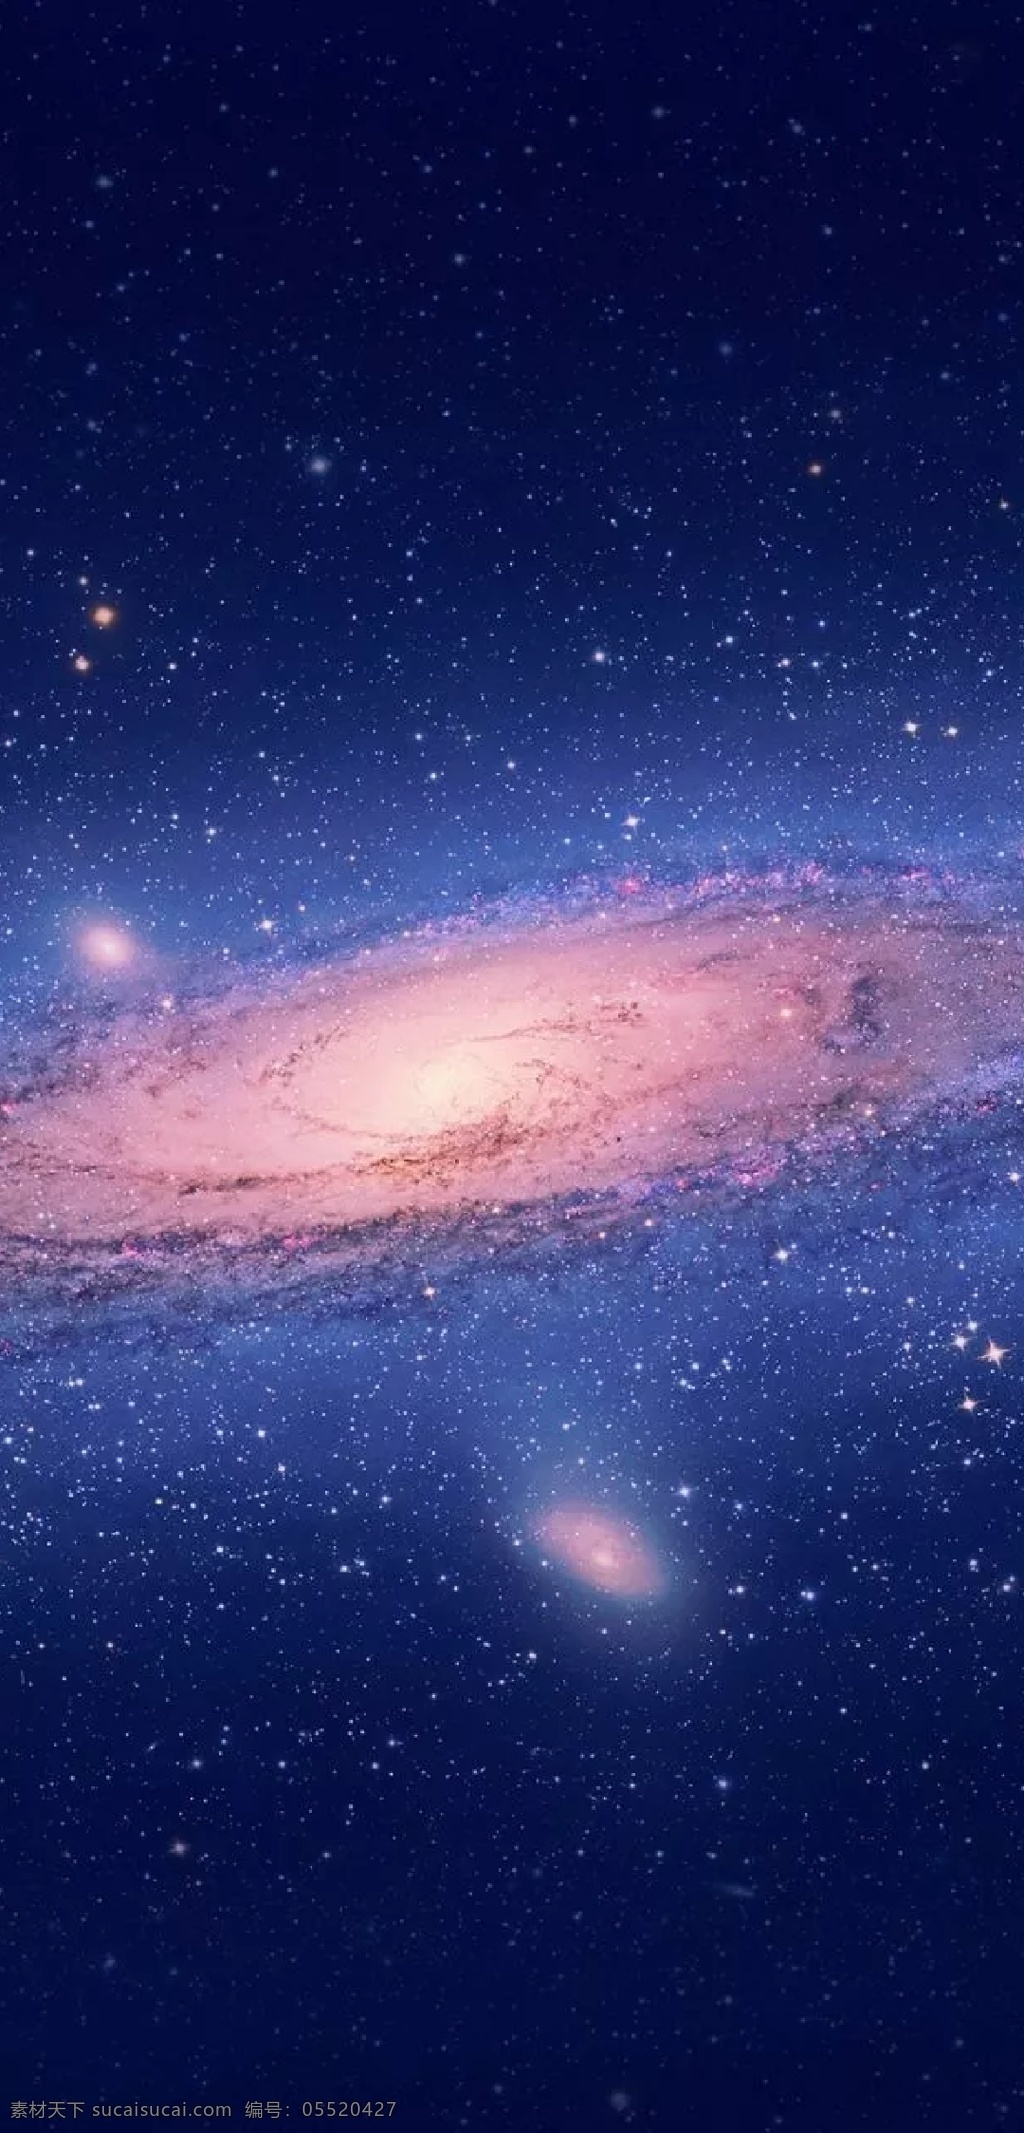 宇宙银河 手机高清桌布 星空 宇宙 星星 银河 星系 星河 星云 亮体 亮光 本星系群 天文 宇宙星系 浩瀚 星团 滤光 紫光 蓝光 云雾 天体 恒星 手机 高清 桌布